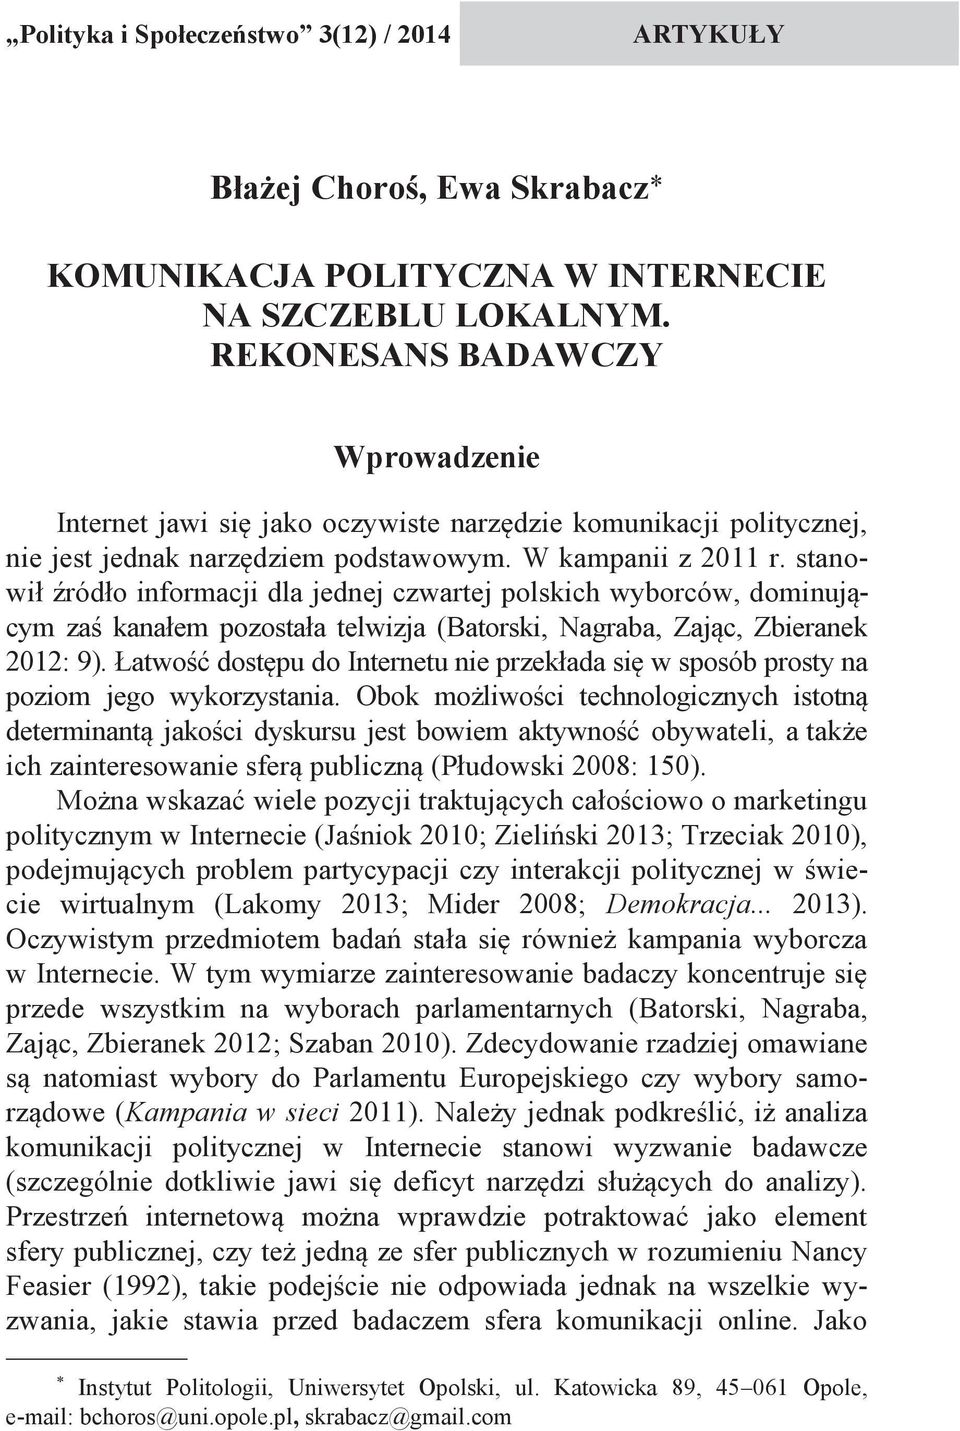 stanowił źródło informacji dla jednej czwartej polskich wyborców, dominującym zaś kanałem pozostała telwizja (Batorski, Nagraba, Zając, Zbieranek 2012: 9).